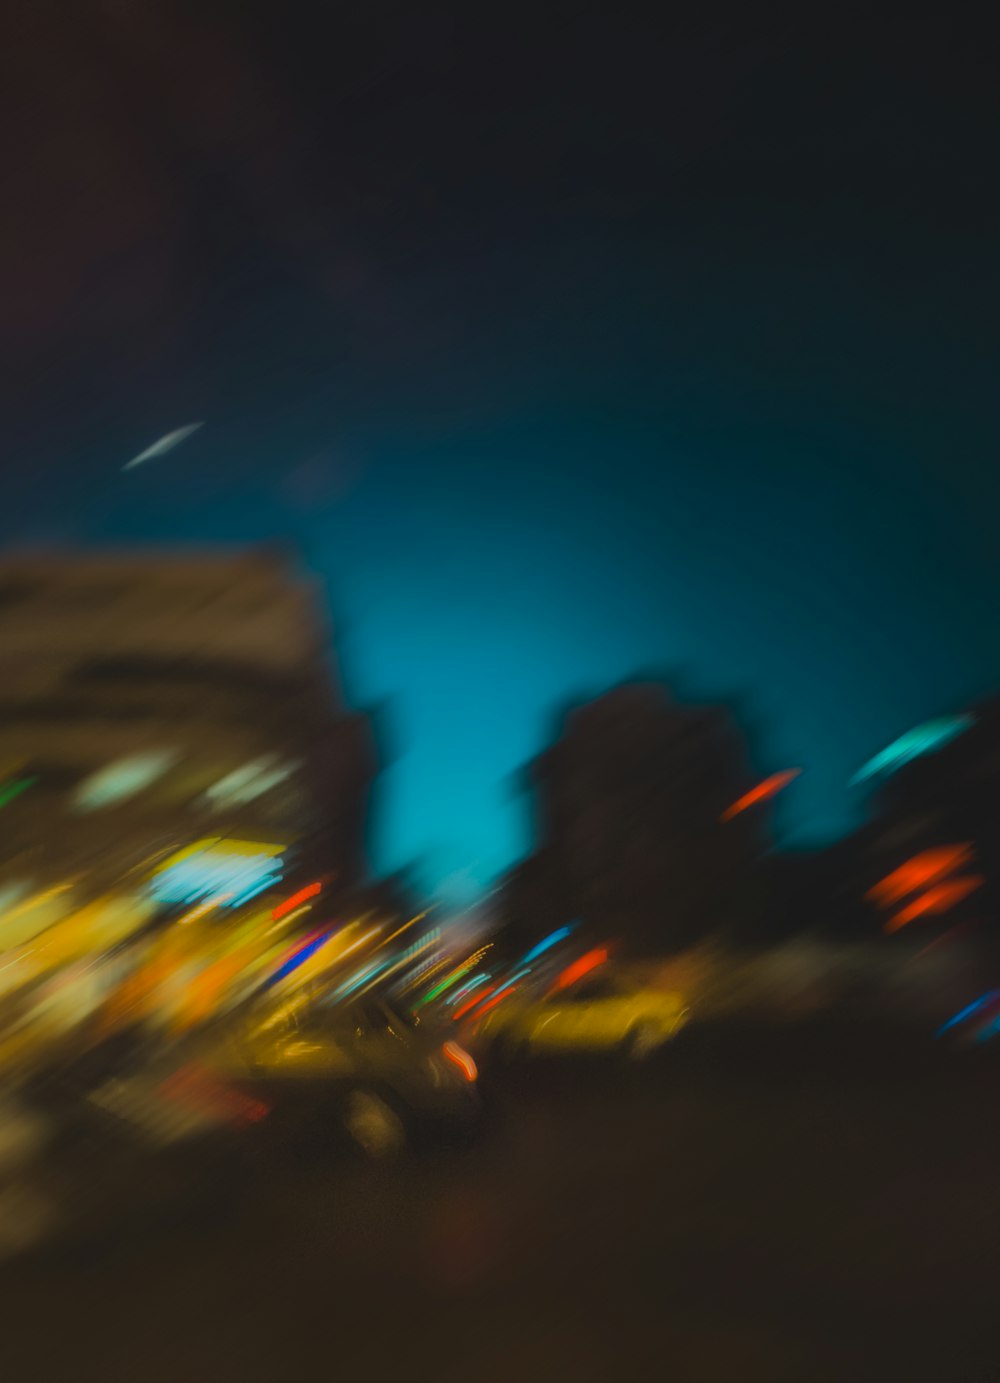 Ánh đèn phố lung linh vào ban đêm không chỉ đem lại vẻ đẹp thịnh hành mà còn phản ánh cuộc sống nhộn nhịp của thành phố. Bất kỳ ai yêu thích sự phấn khích và rực rỡ của thành phố đều nên xem những hình ảnh đến từ thành phố ban đêm này. 